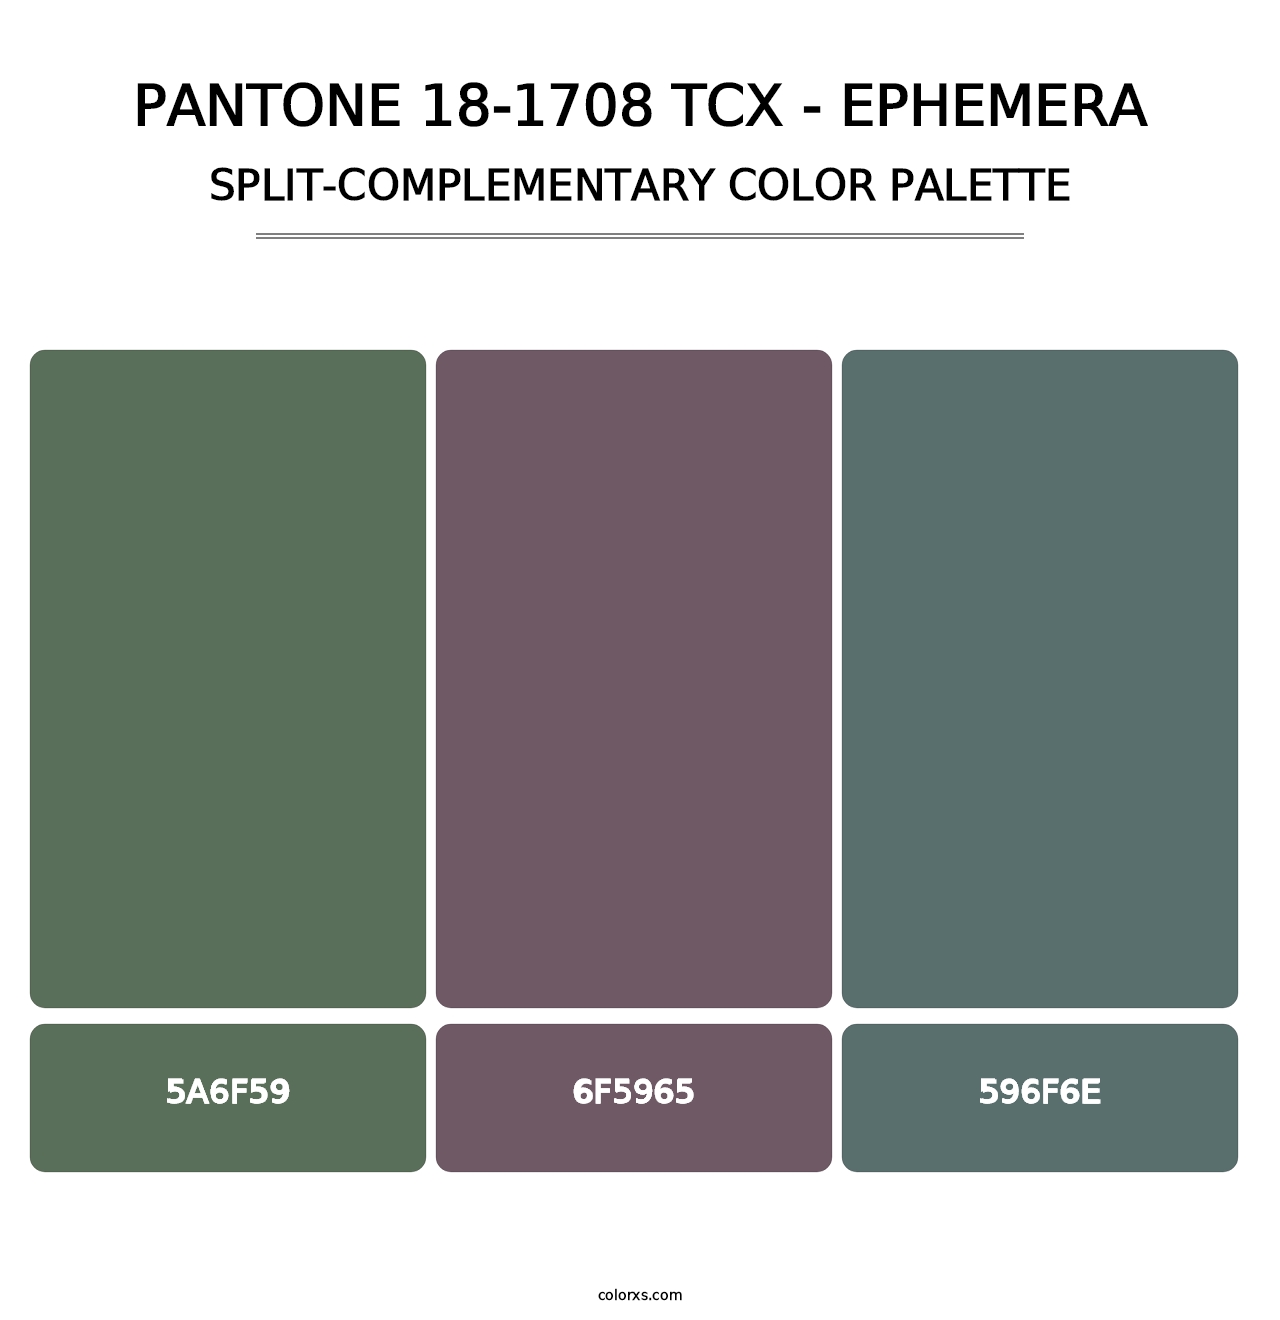 PANTONE 18-1708 TCX - Ephemera - Split-Complementary Color Palette